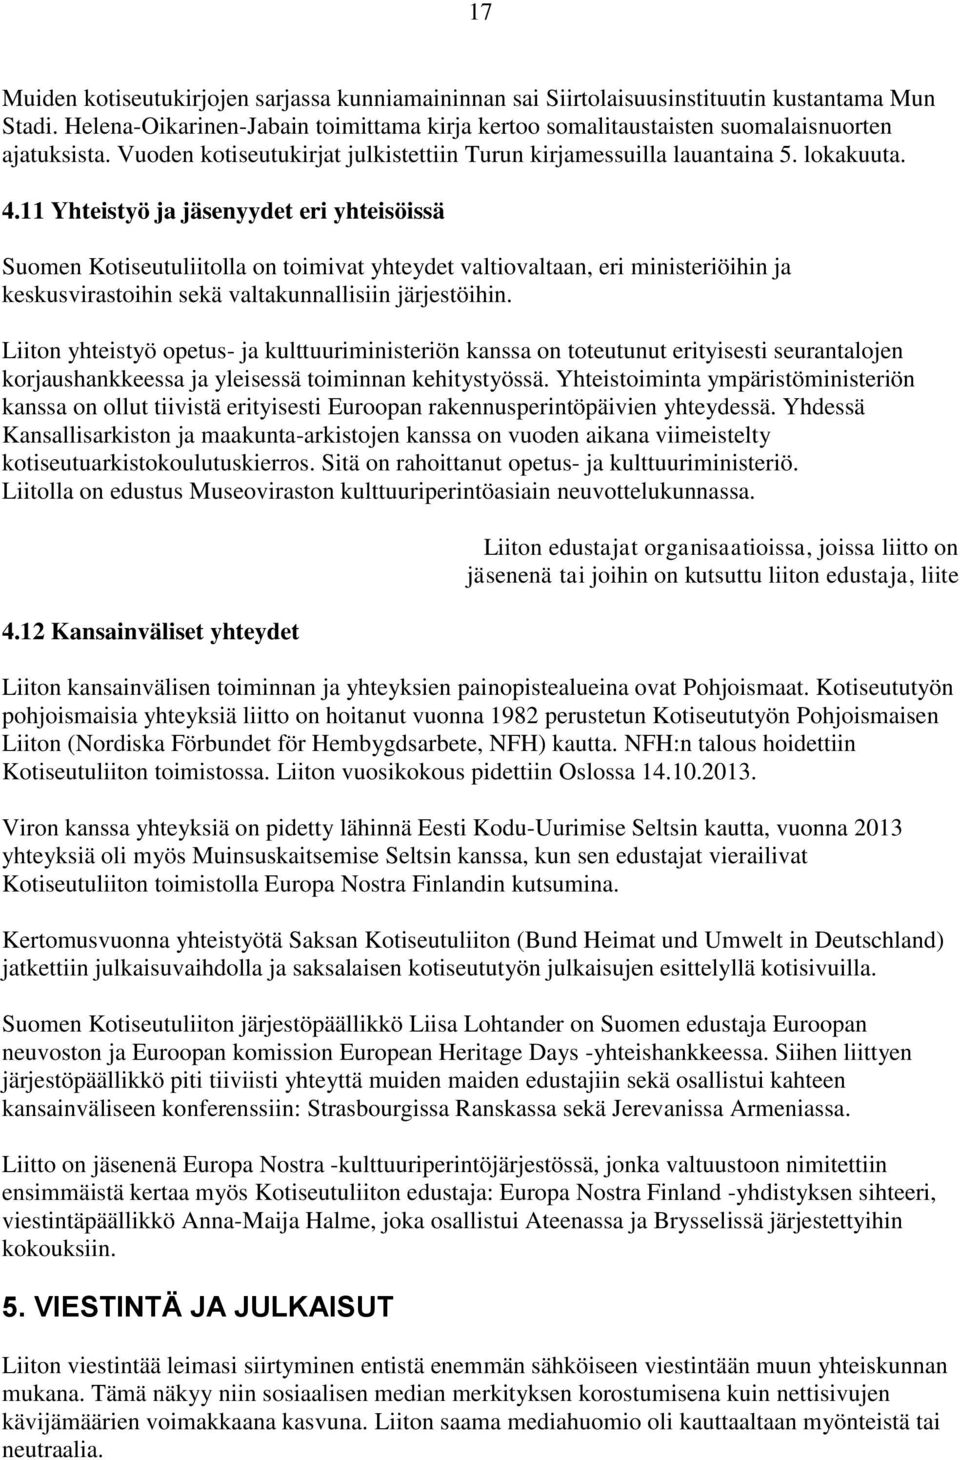 11 Yhteistyö ja jäsenyydet eri yhteisöissä Suomen Kotiseutuliitolla on toimivat yhteydet valtiovaltaan, eri ministeriöihin ja keskusvirastoihin sekä valtakunnallisiin järjestöihin.